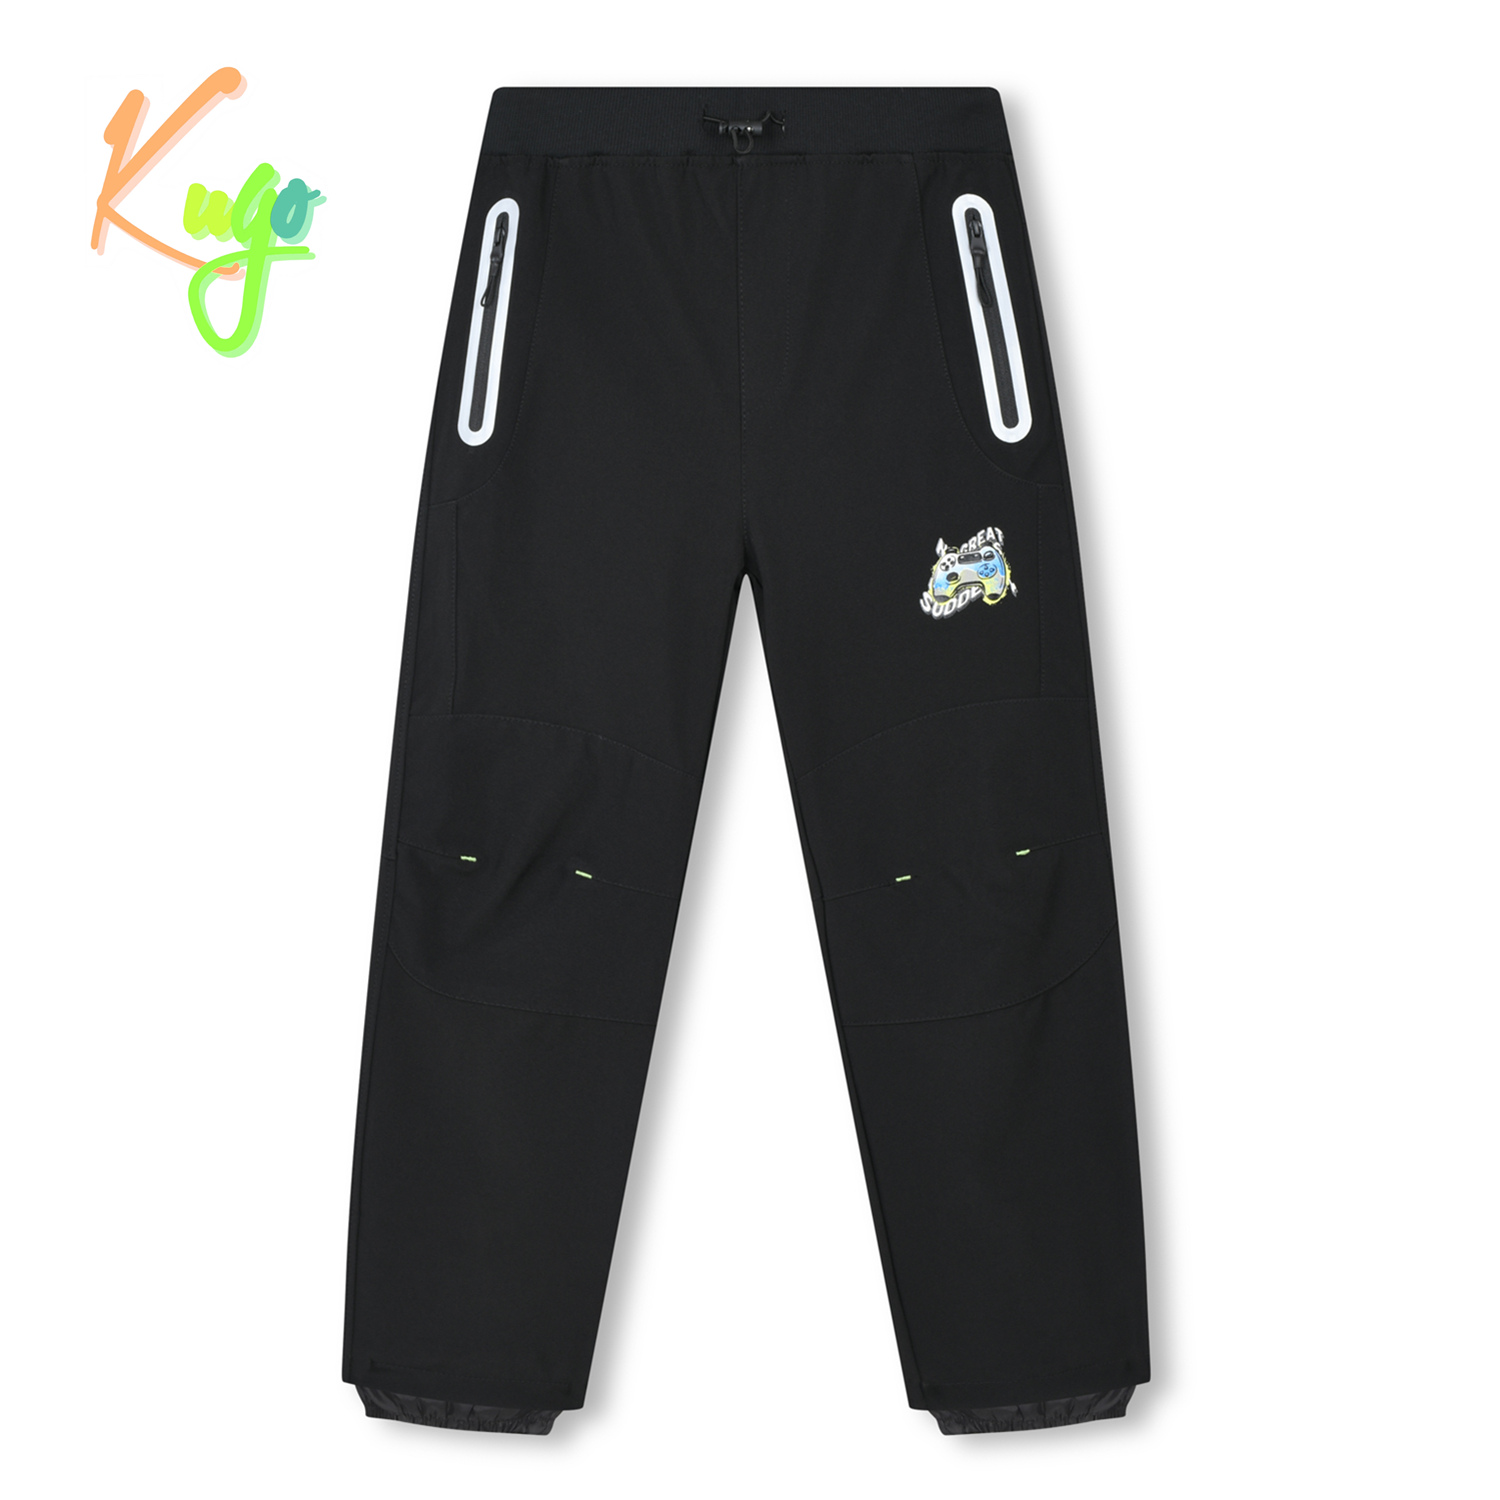 Chlapecké softshellové kalhoty - KUGO HK3118, celočerná Barva: Černá, Velikost: 140